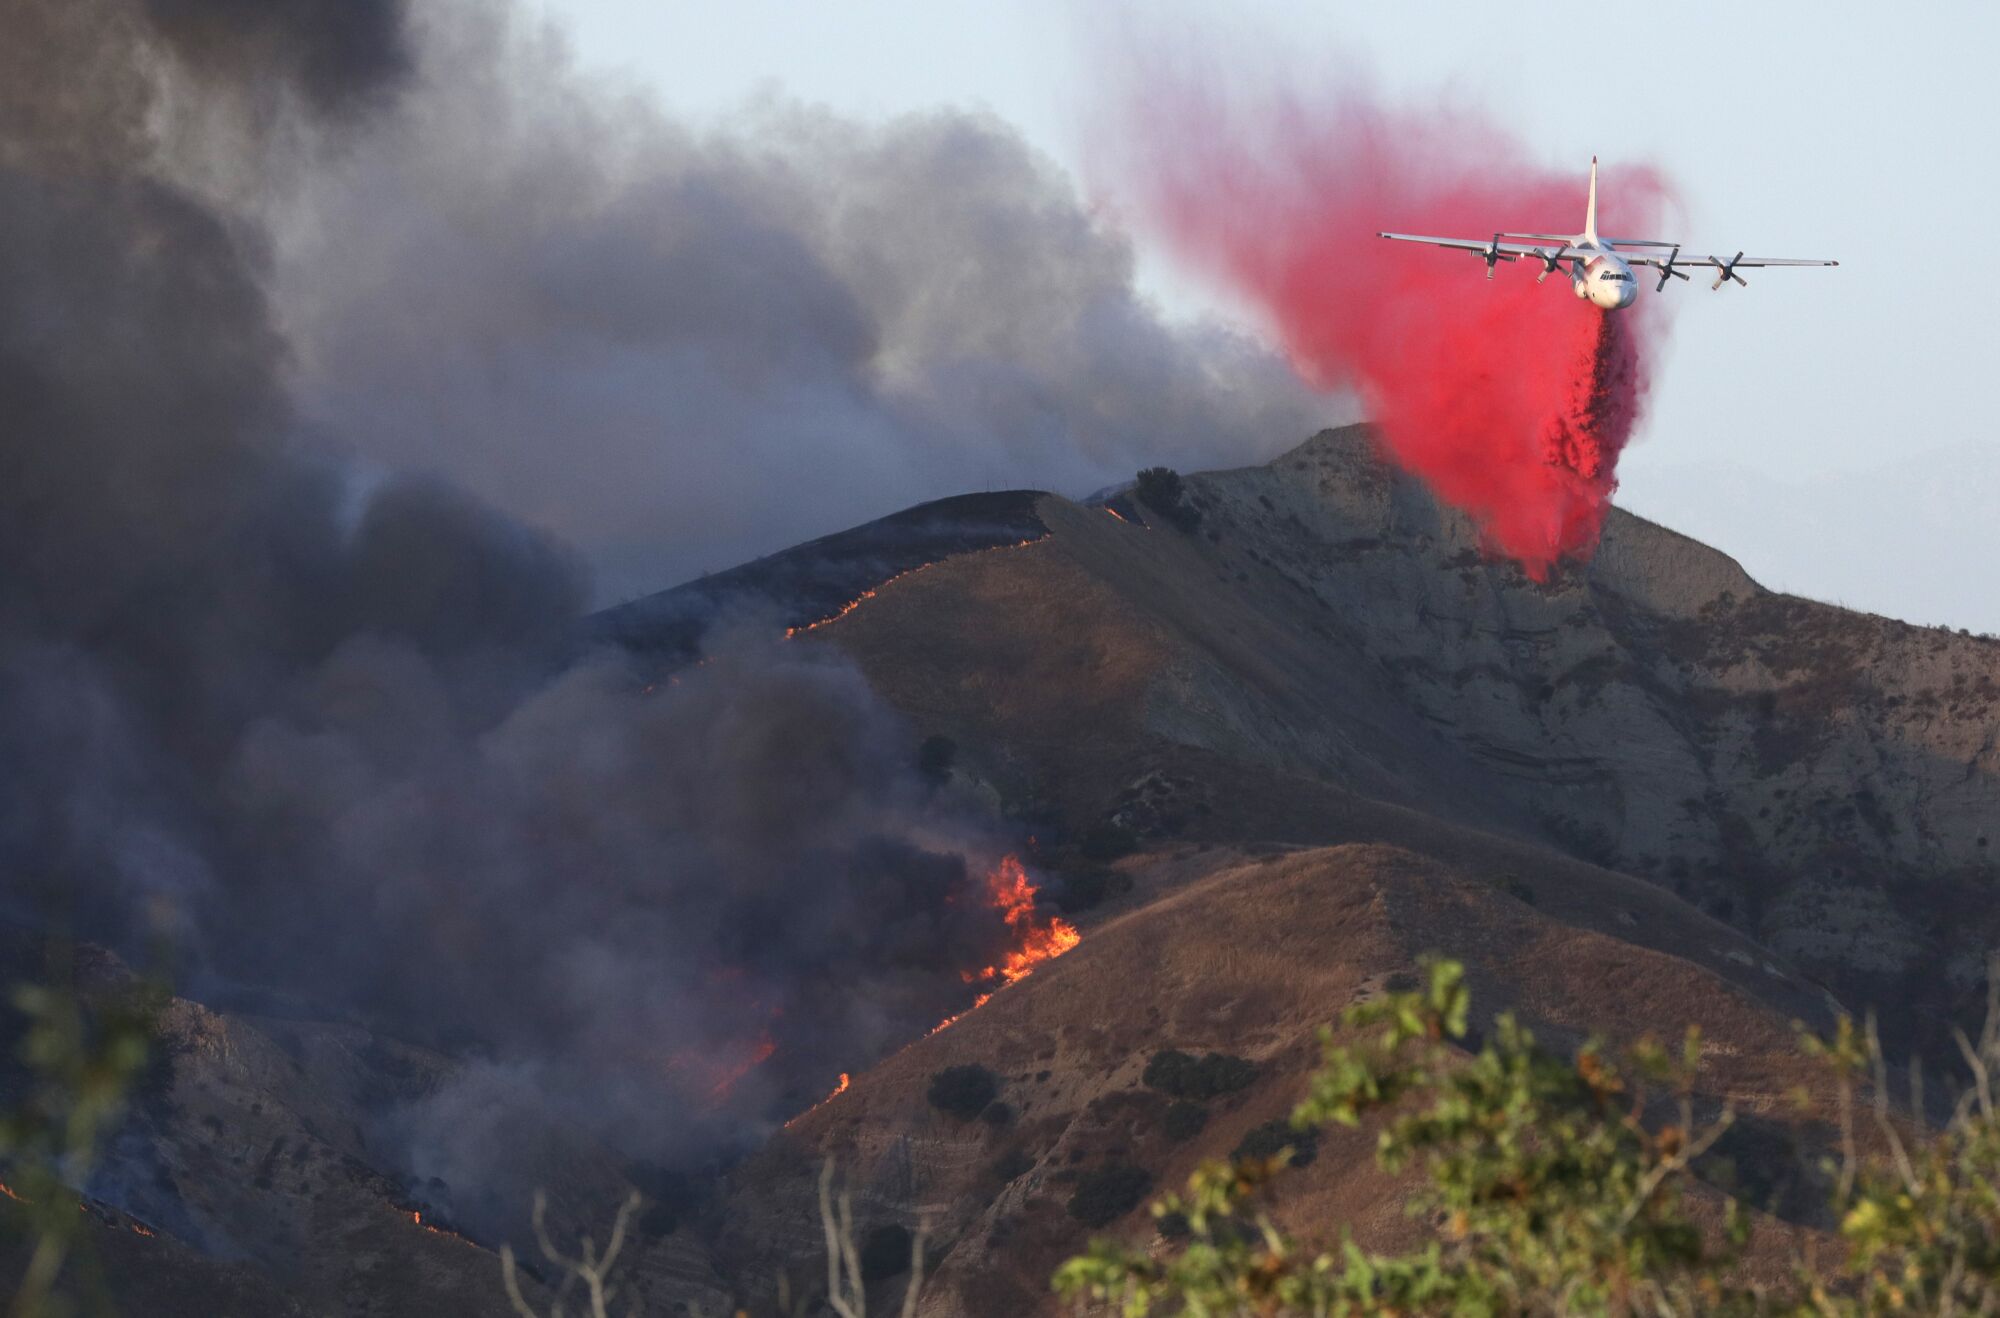 An air tanker drops fire retardant on a ridge near the Green River Golf Club in Corona.